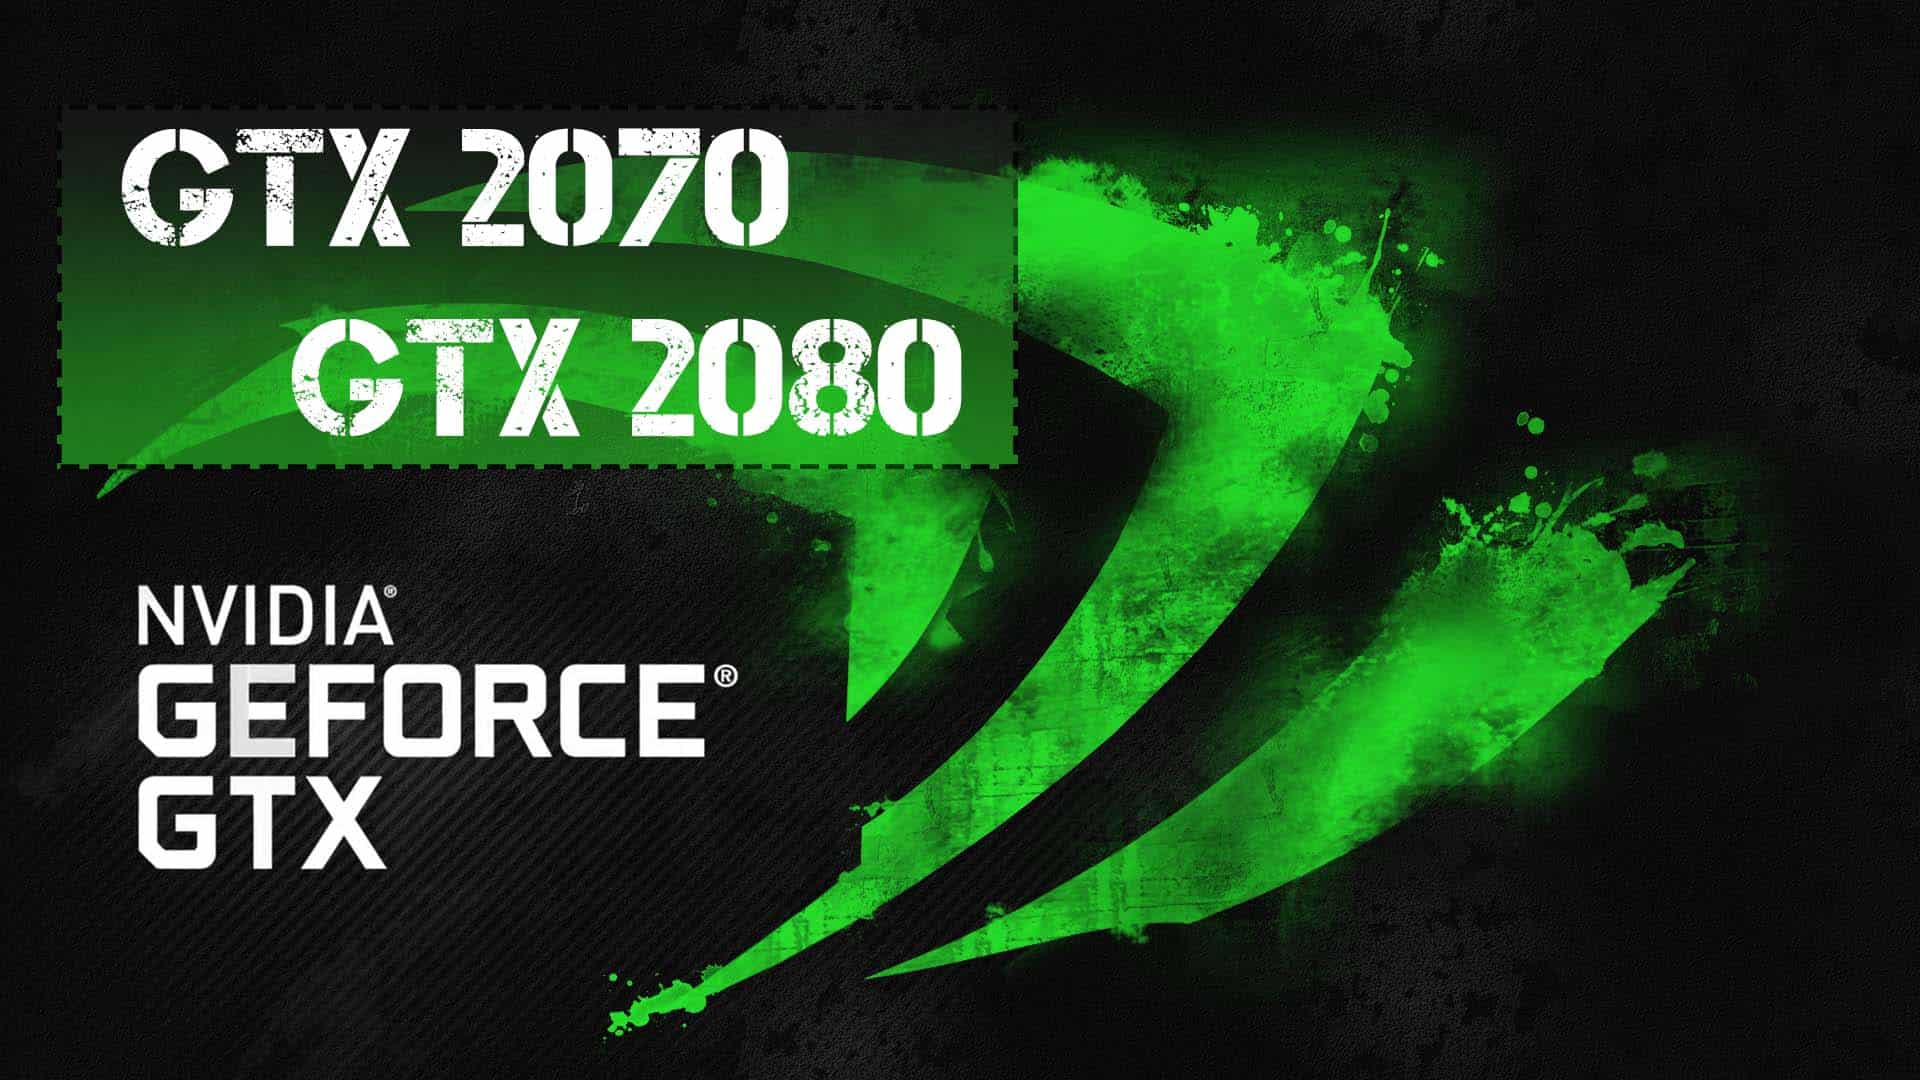 Geforce gtx 2070